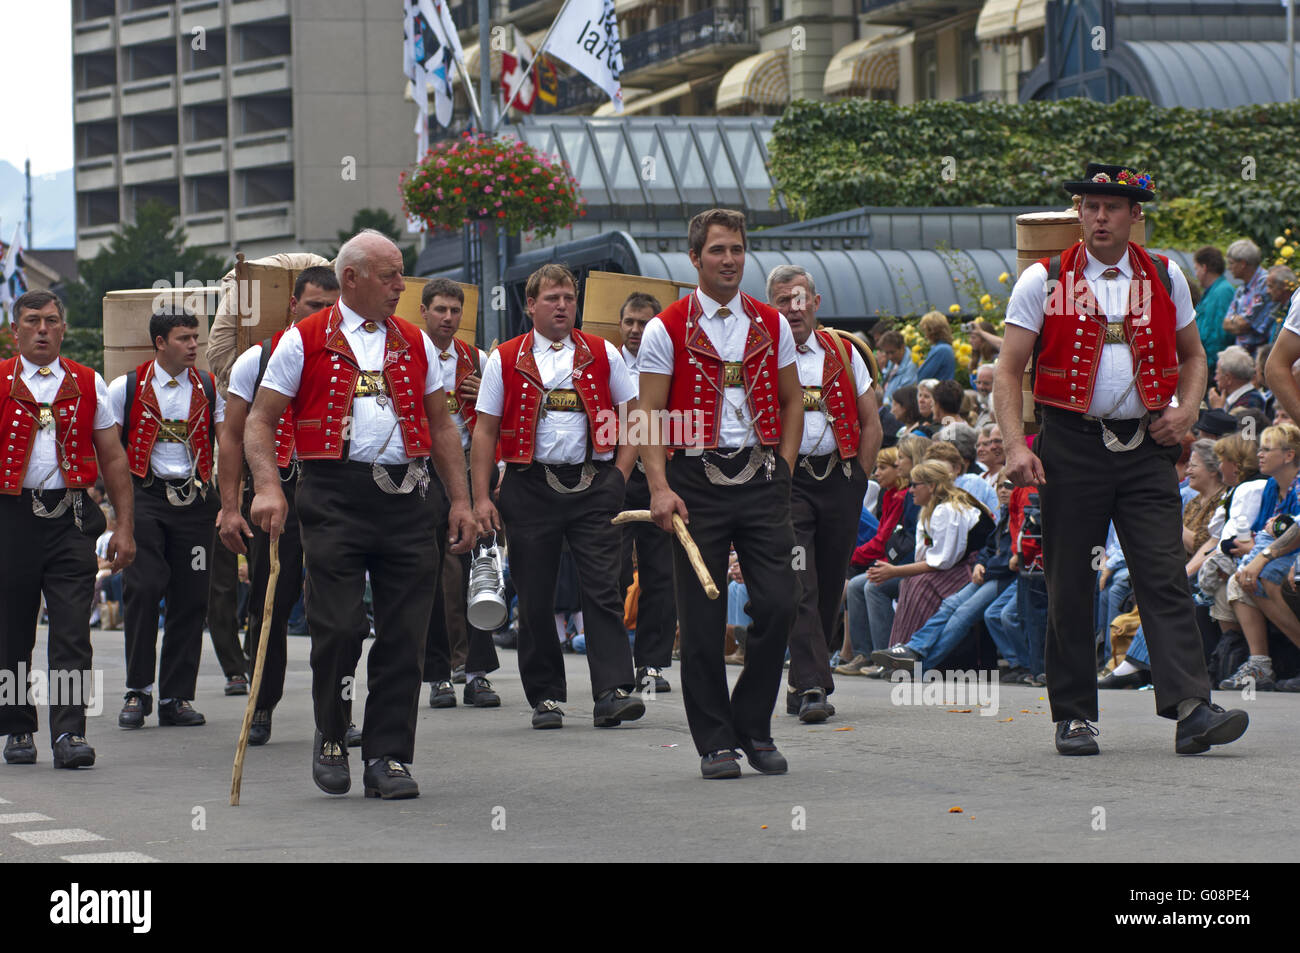 Costumi svizzera immagini e fotografie stock ad alta risoluzione - Alamy